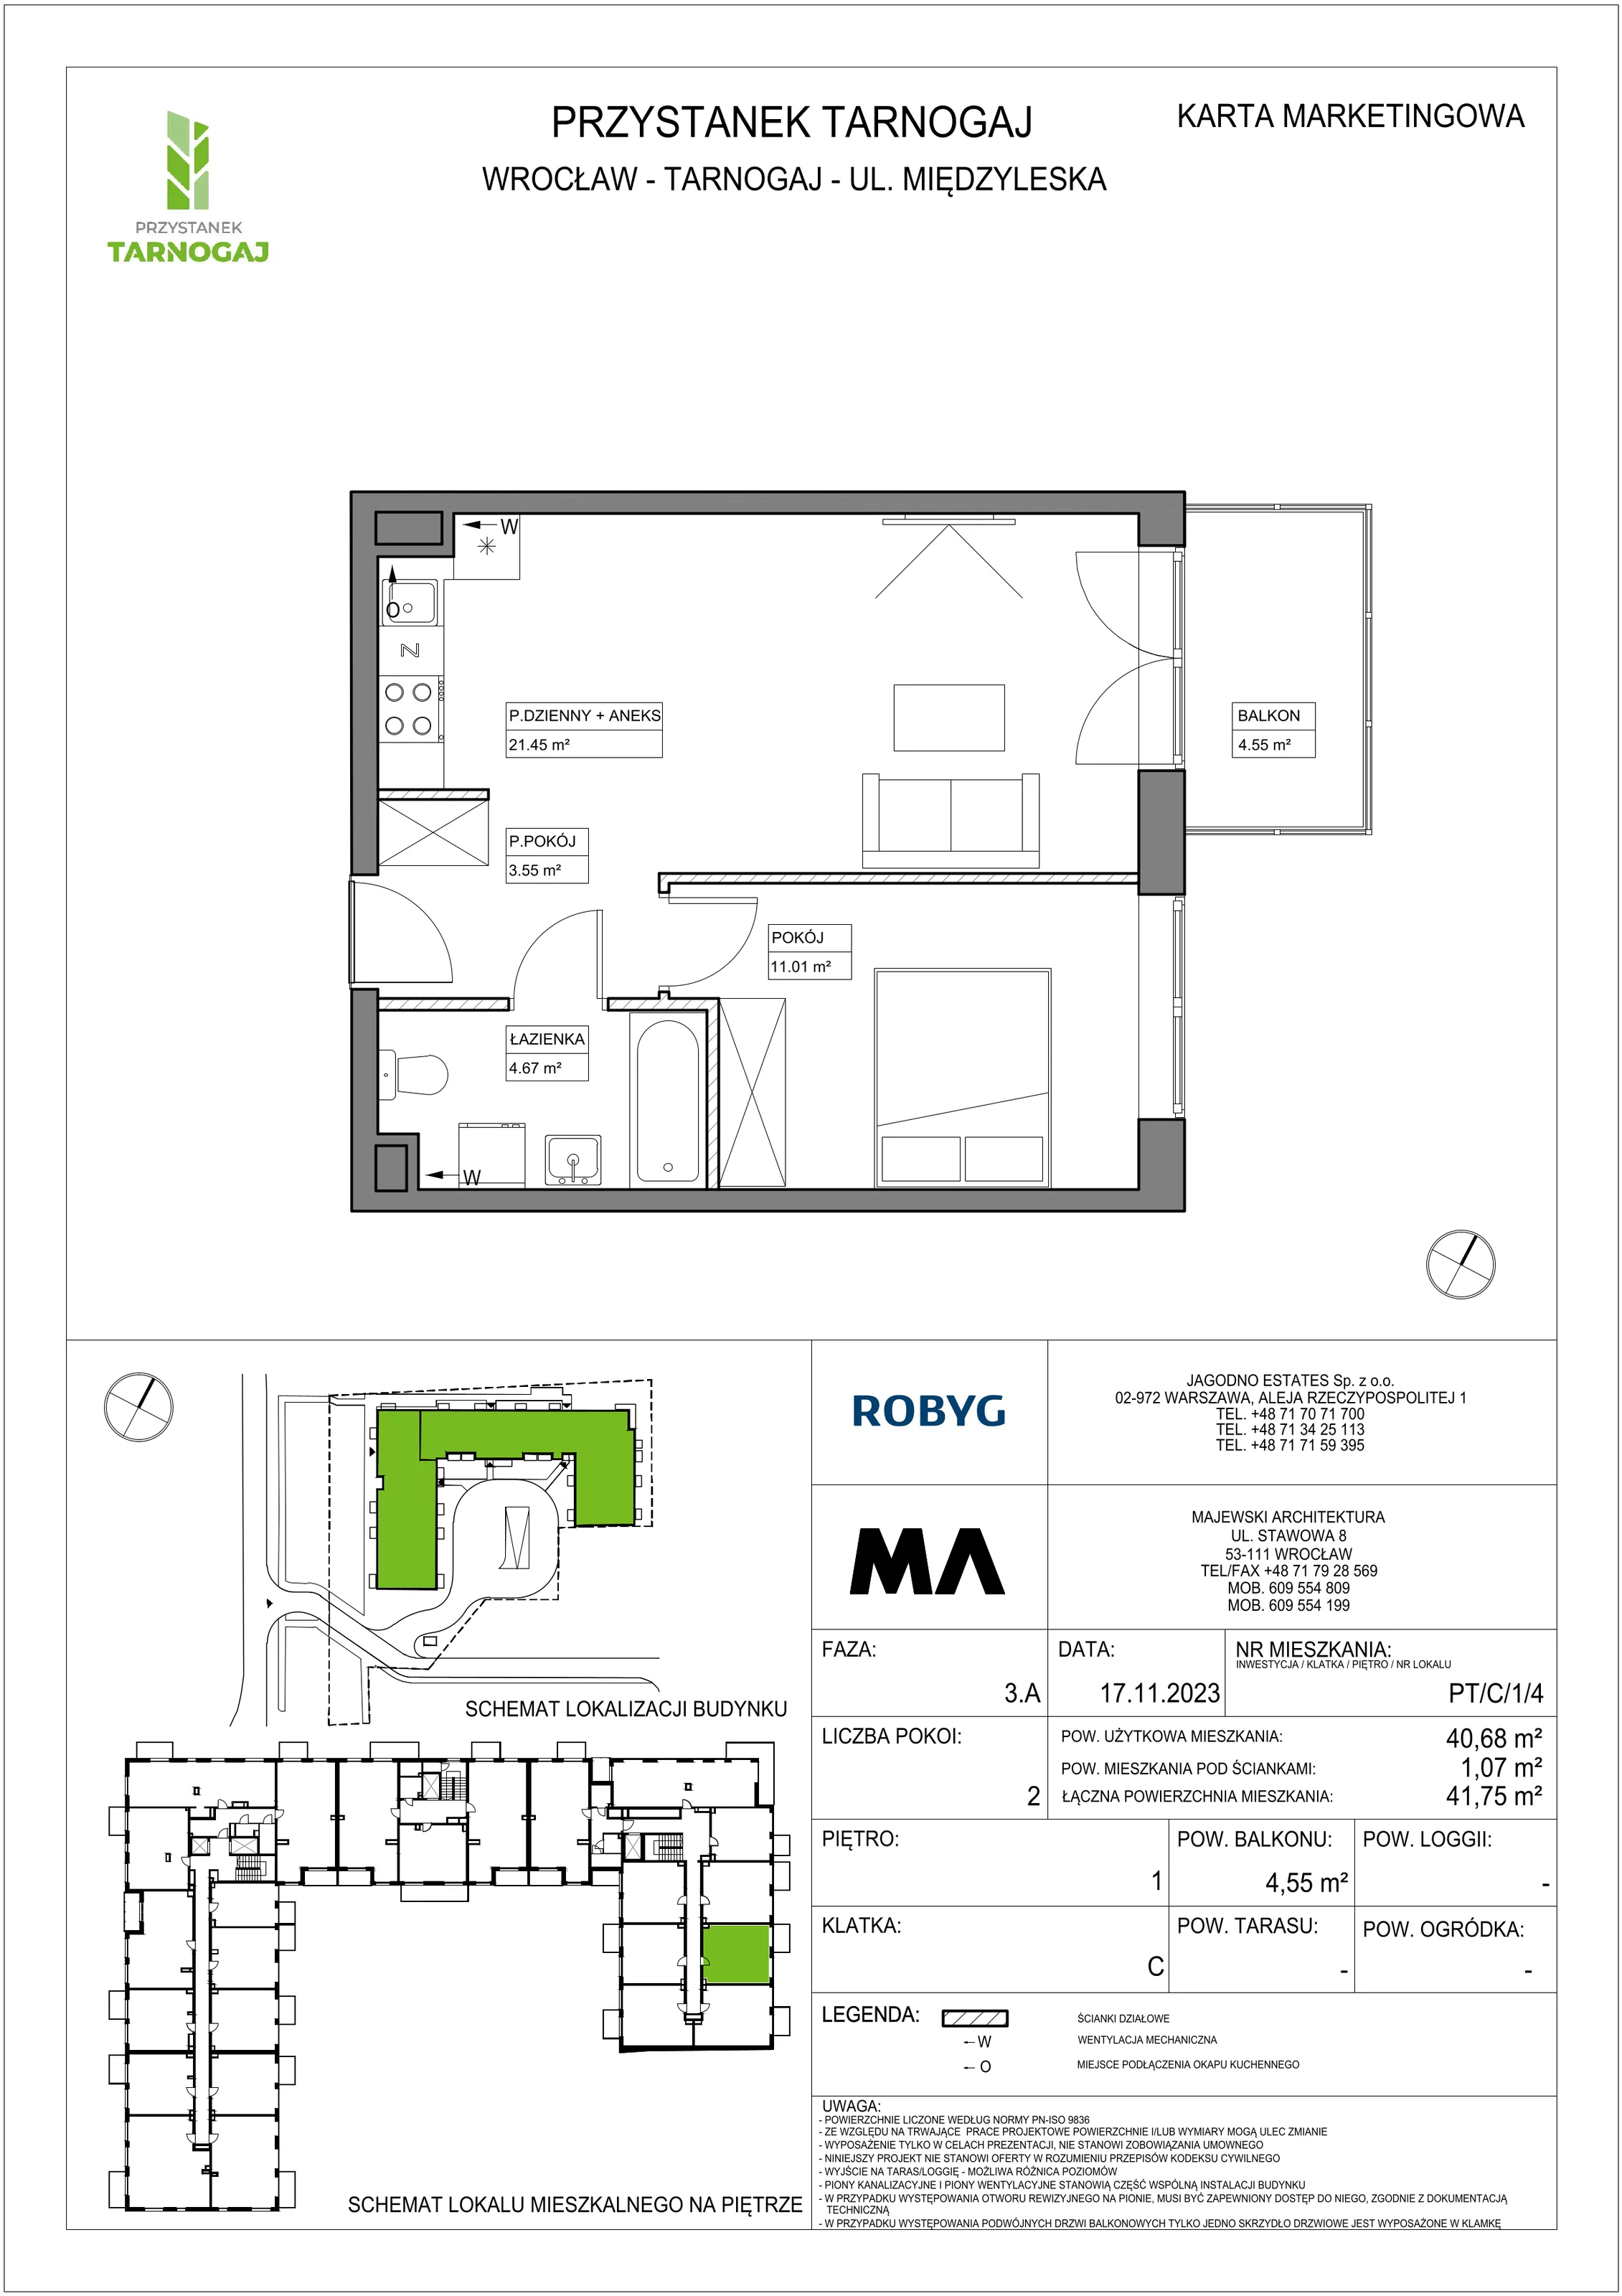 Mieszkanie 40,68 m², piętro 1, oferta nr PT/C/1/4, Przystanek Tarnogaj, Wrocław, Tarnogaj, Krzyki, ul. Międzyleska / Gazowa